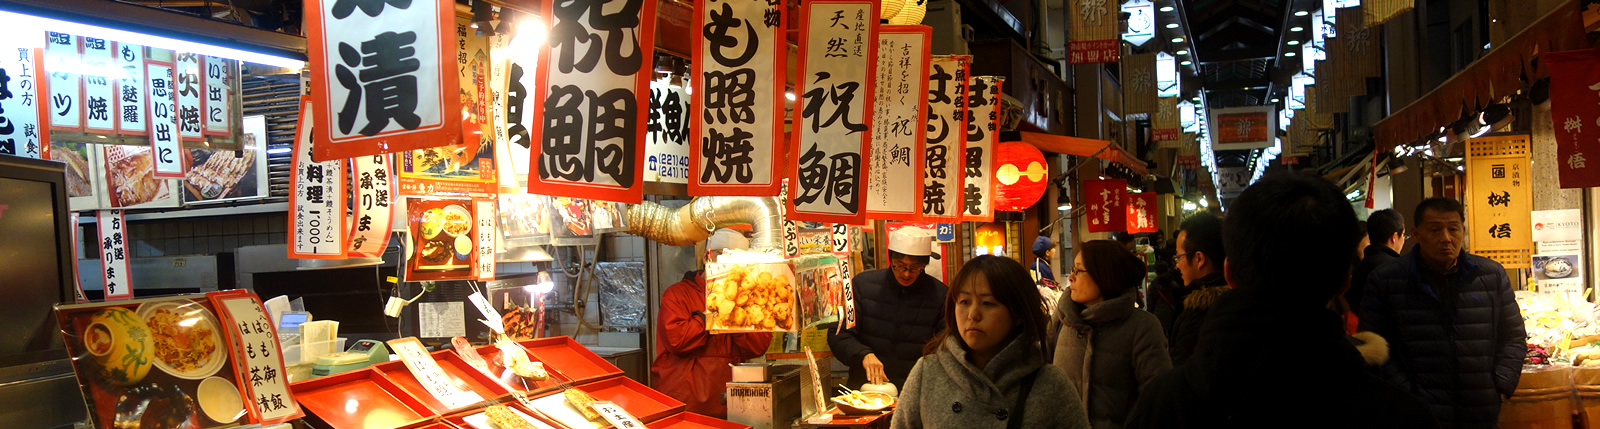 Nishiki Market © Chef Tamaki